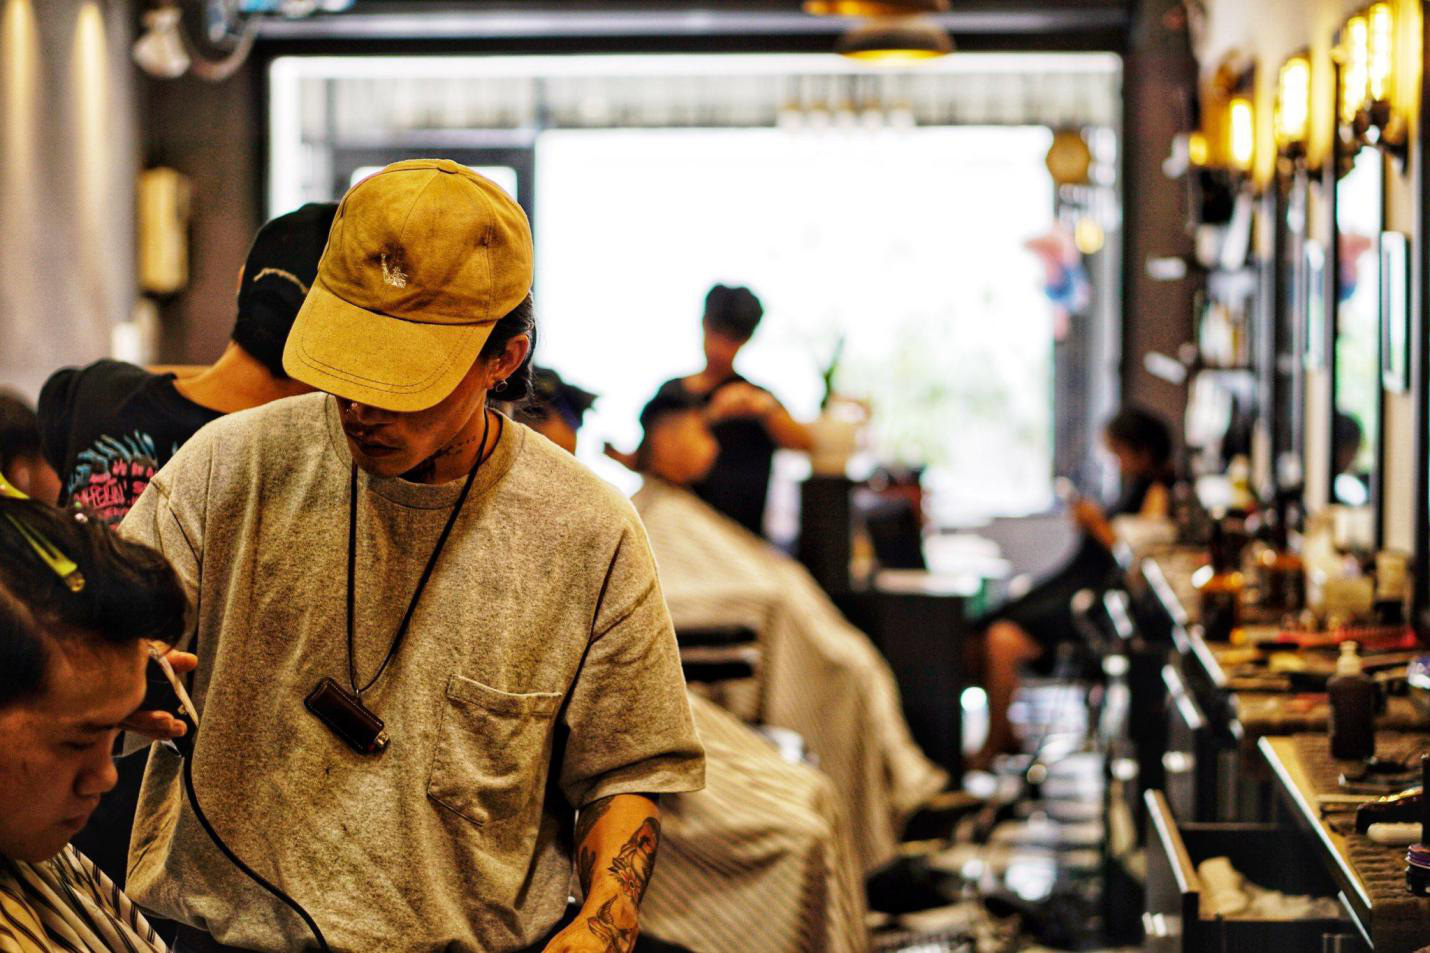 Tony Barer House - Tiệm cắt tóc đam mê văn hóa Barber shop tại TP. HCM - Ảnh 3.